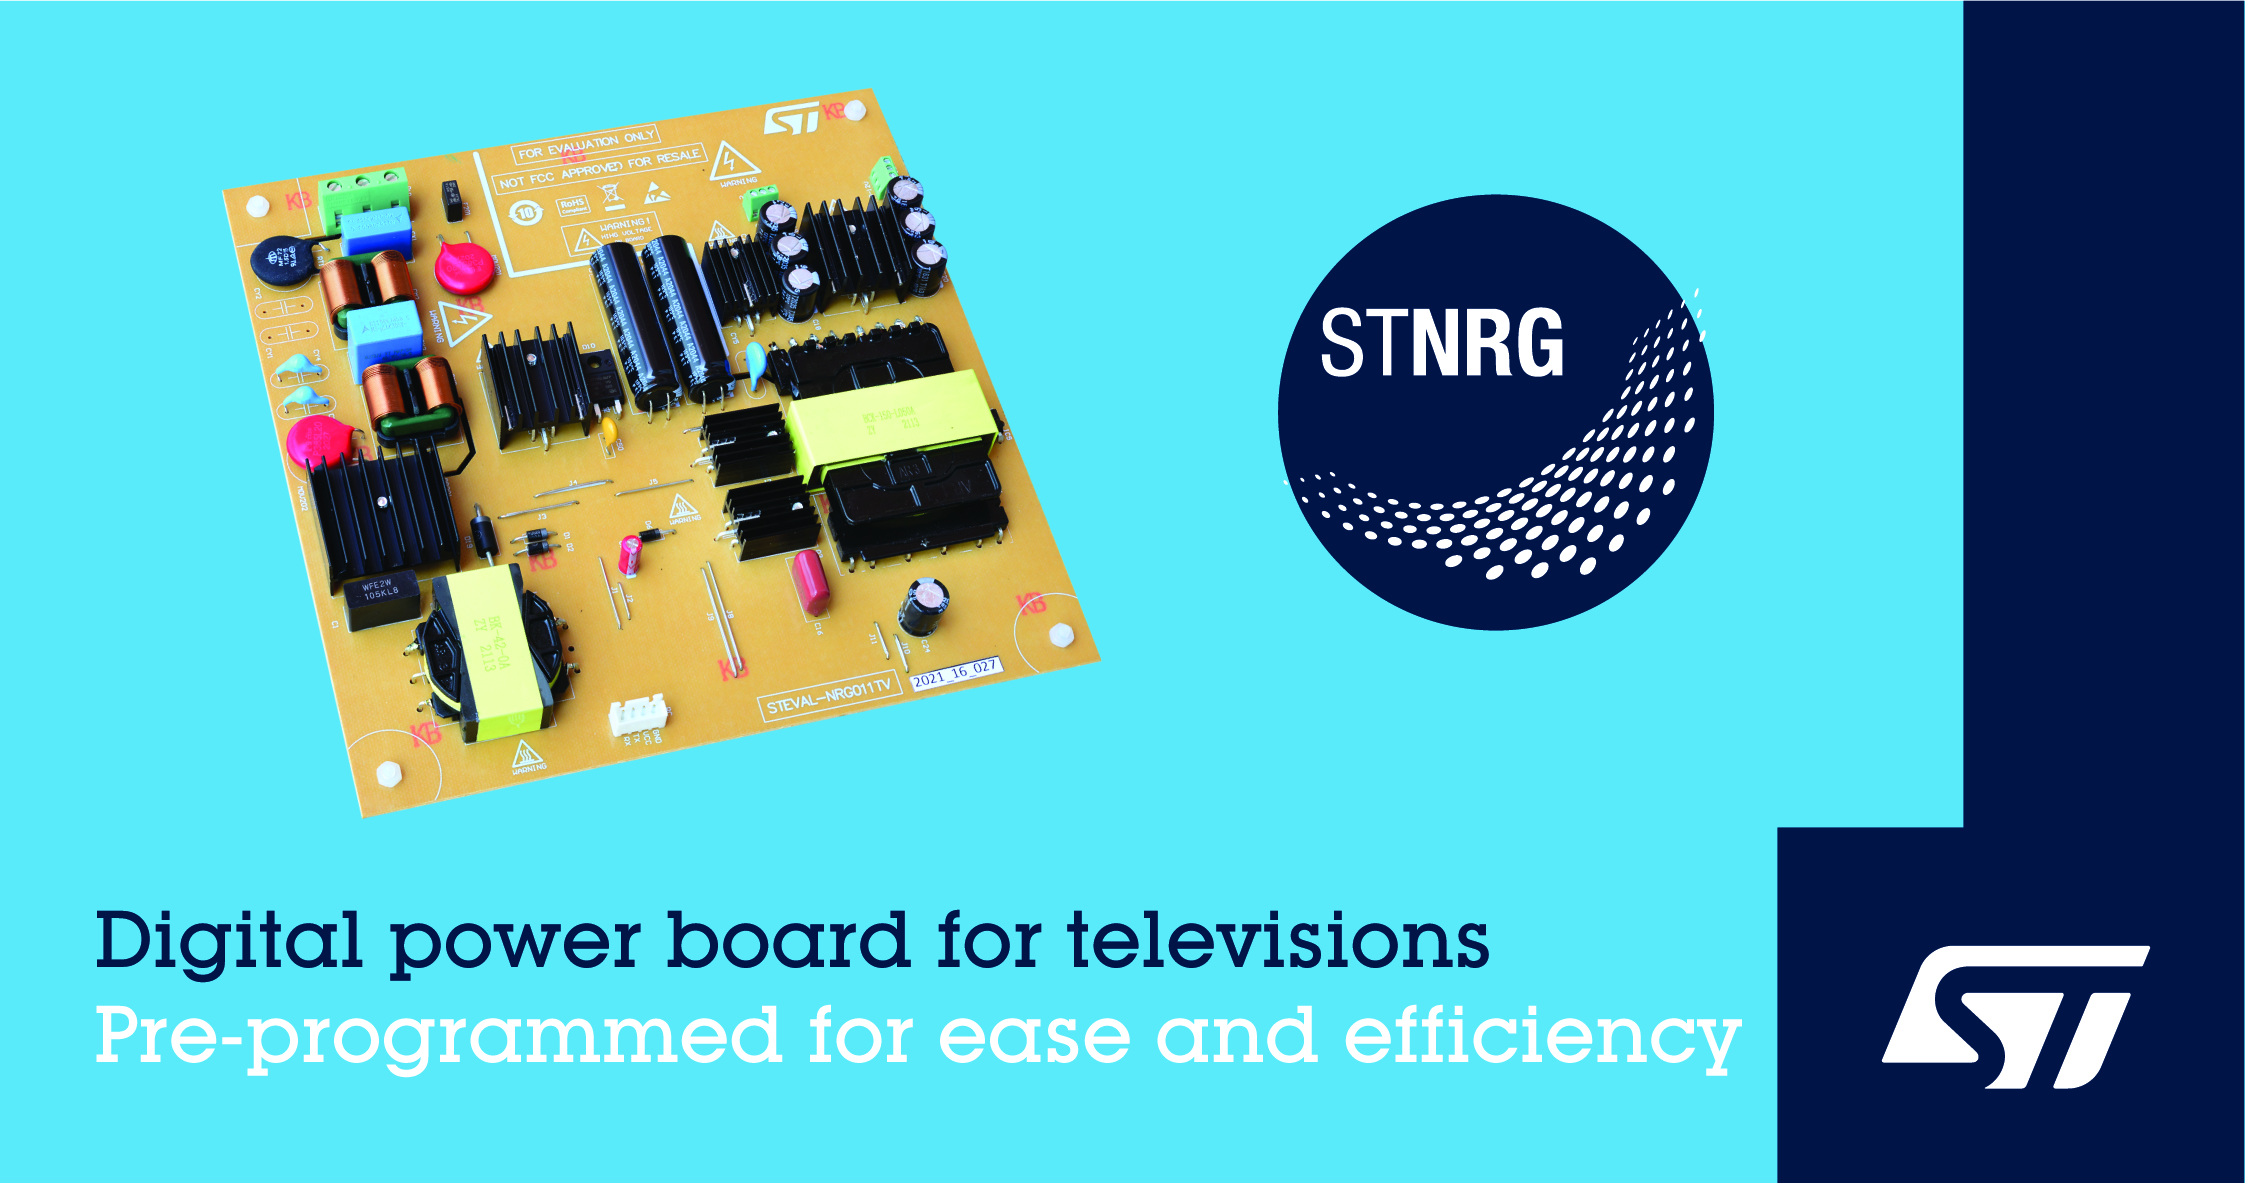 意法半導體 LED 電視 200W 數字電源解決方案滿足嚴格的生態設計標準